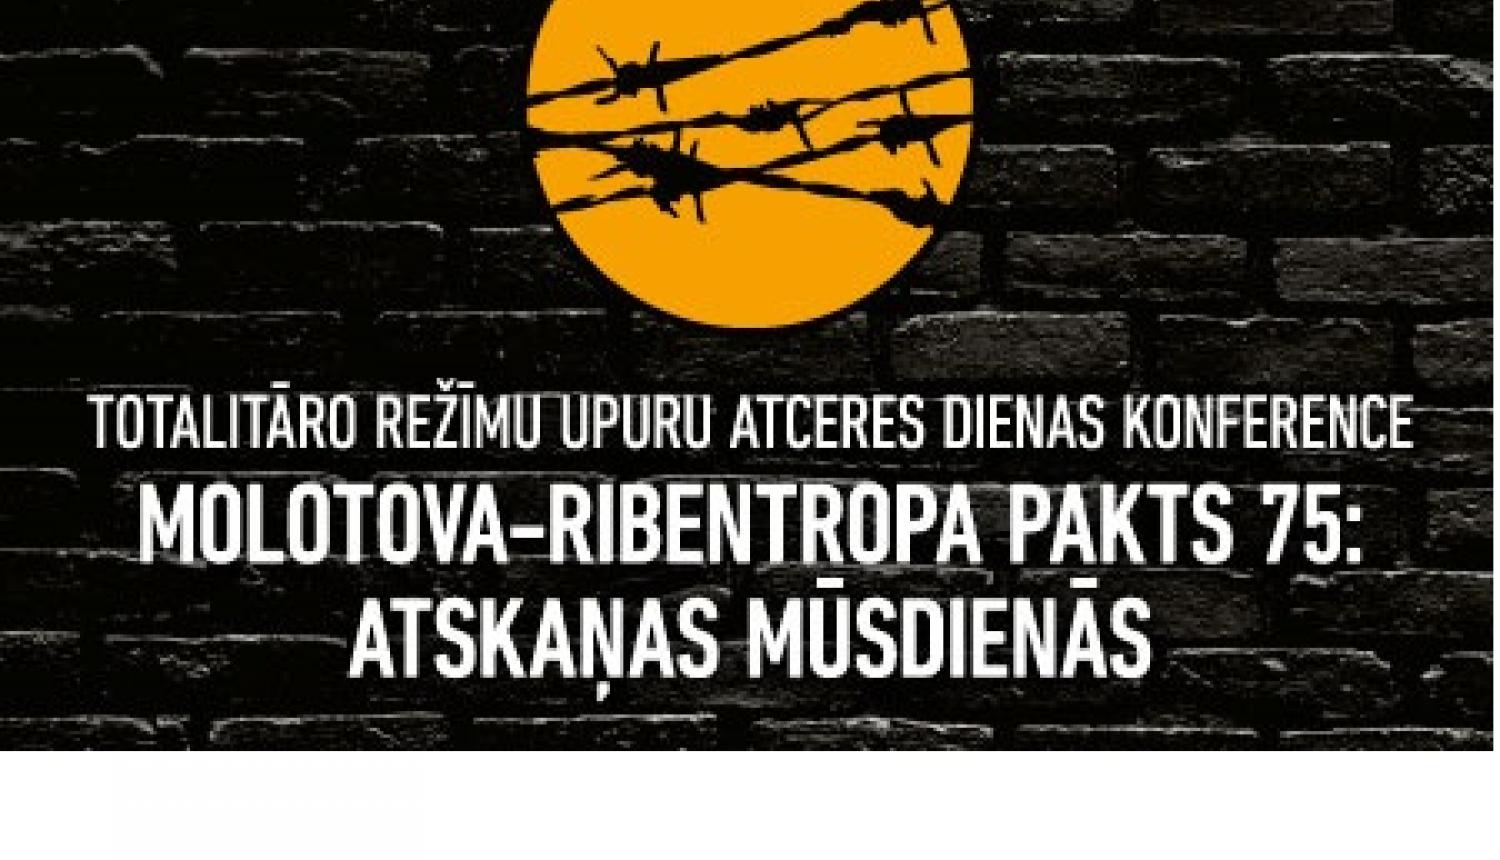 Notiks konference "Molotova - Ribentropa pakts 75: atskaņas mūsdienās"